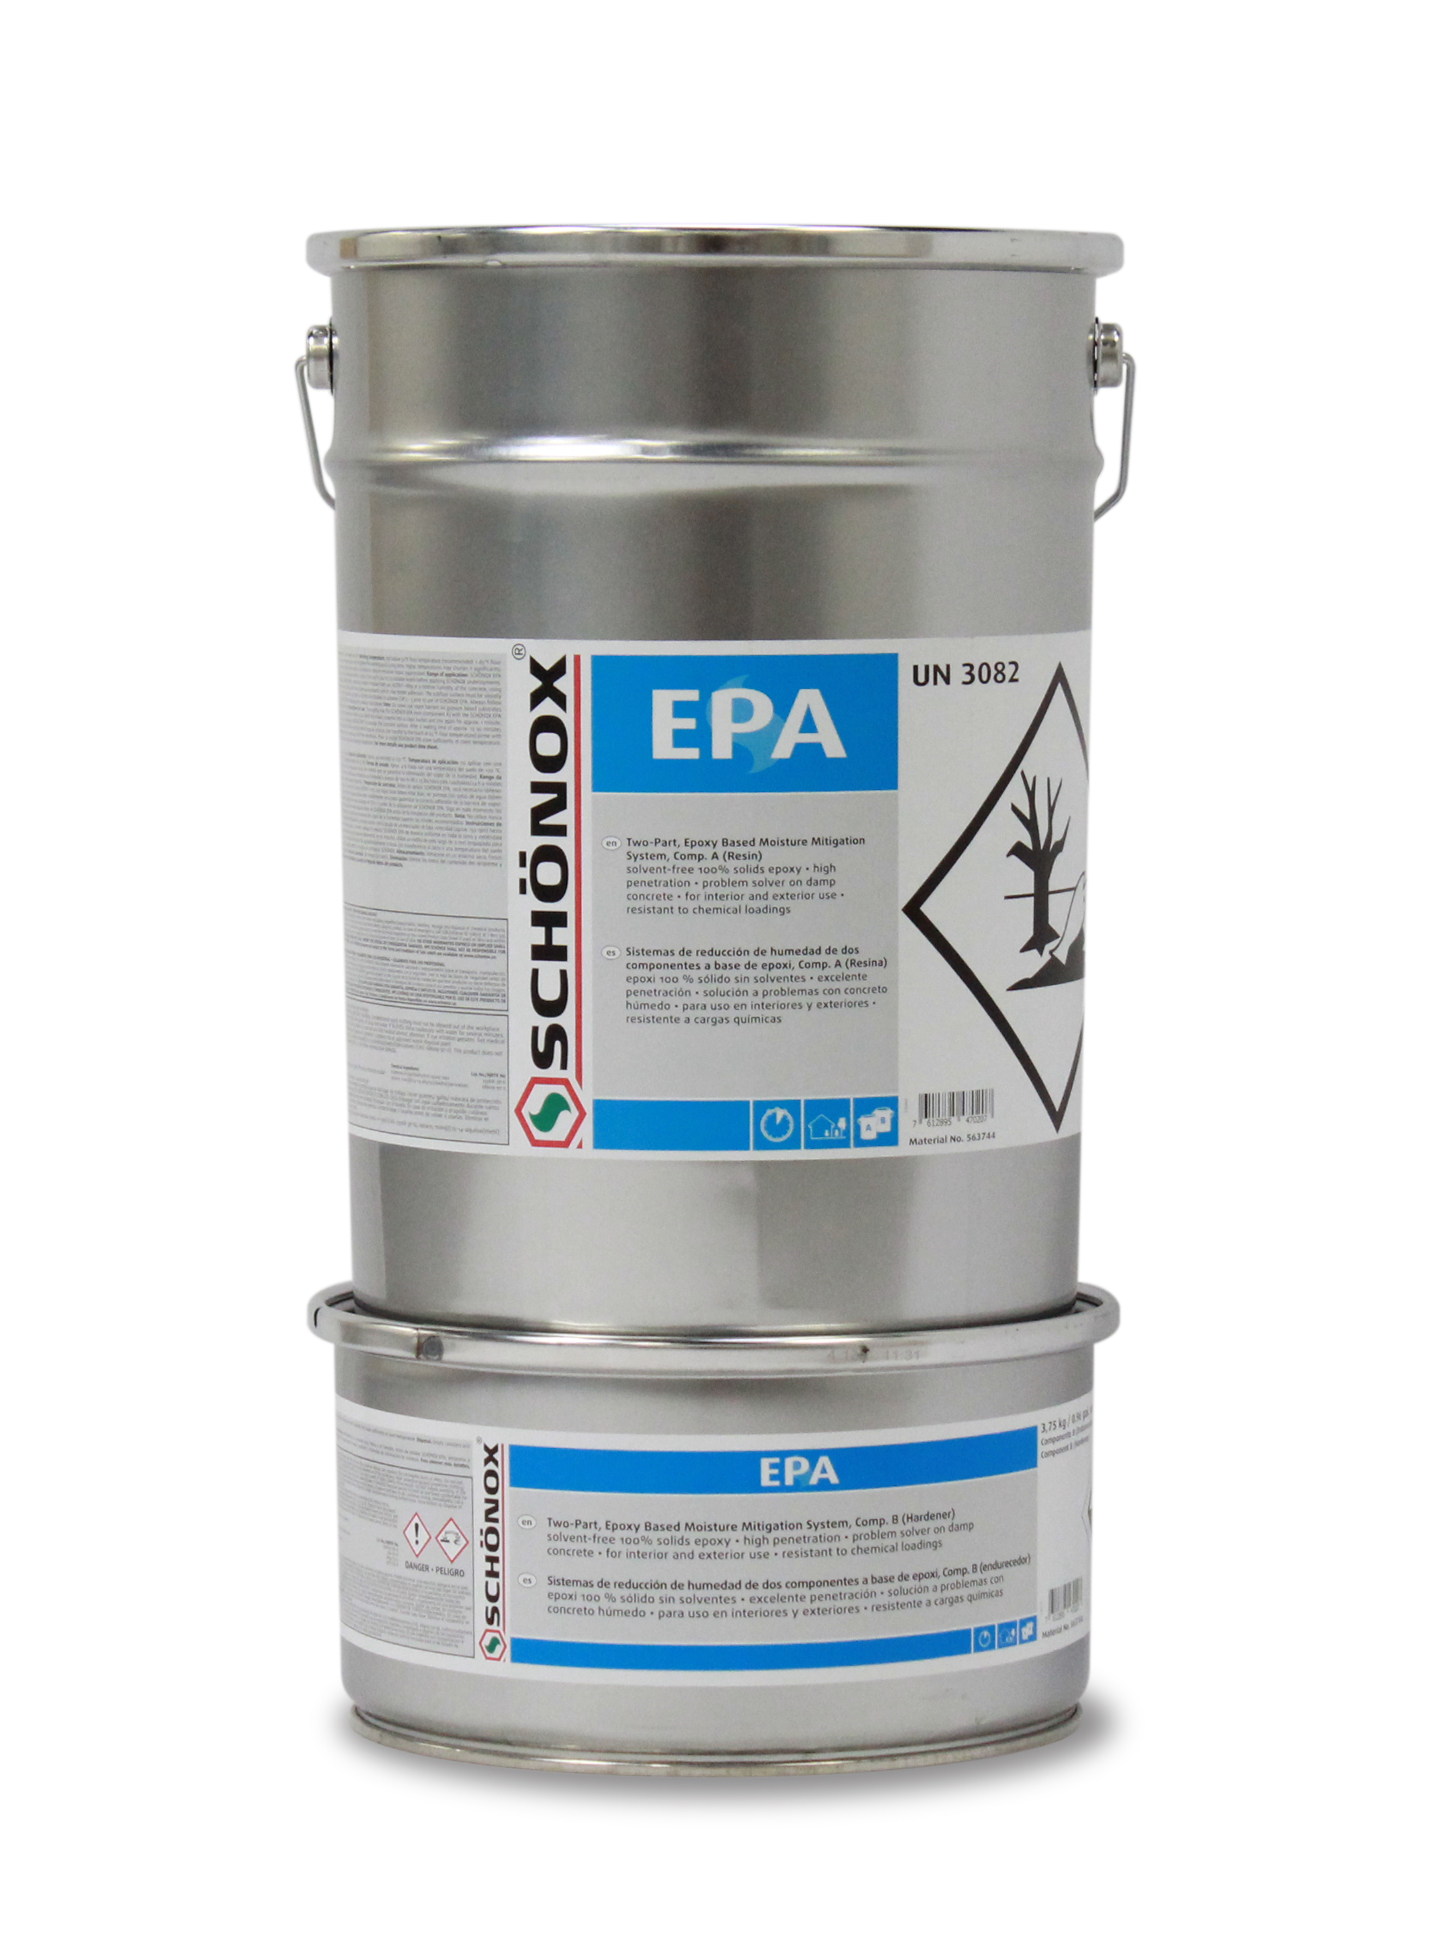 Image of EPA Product Bucket